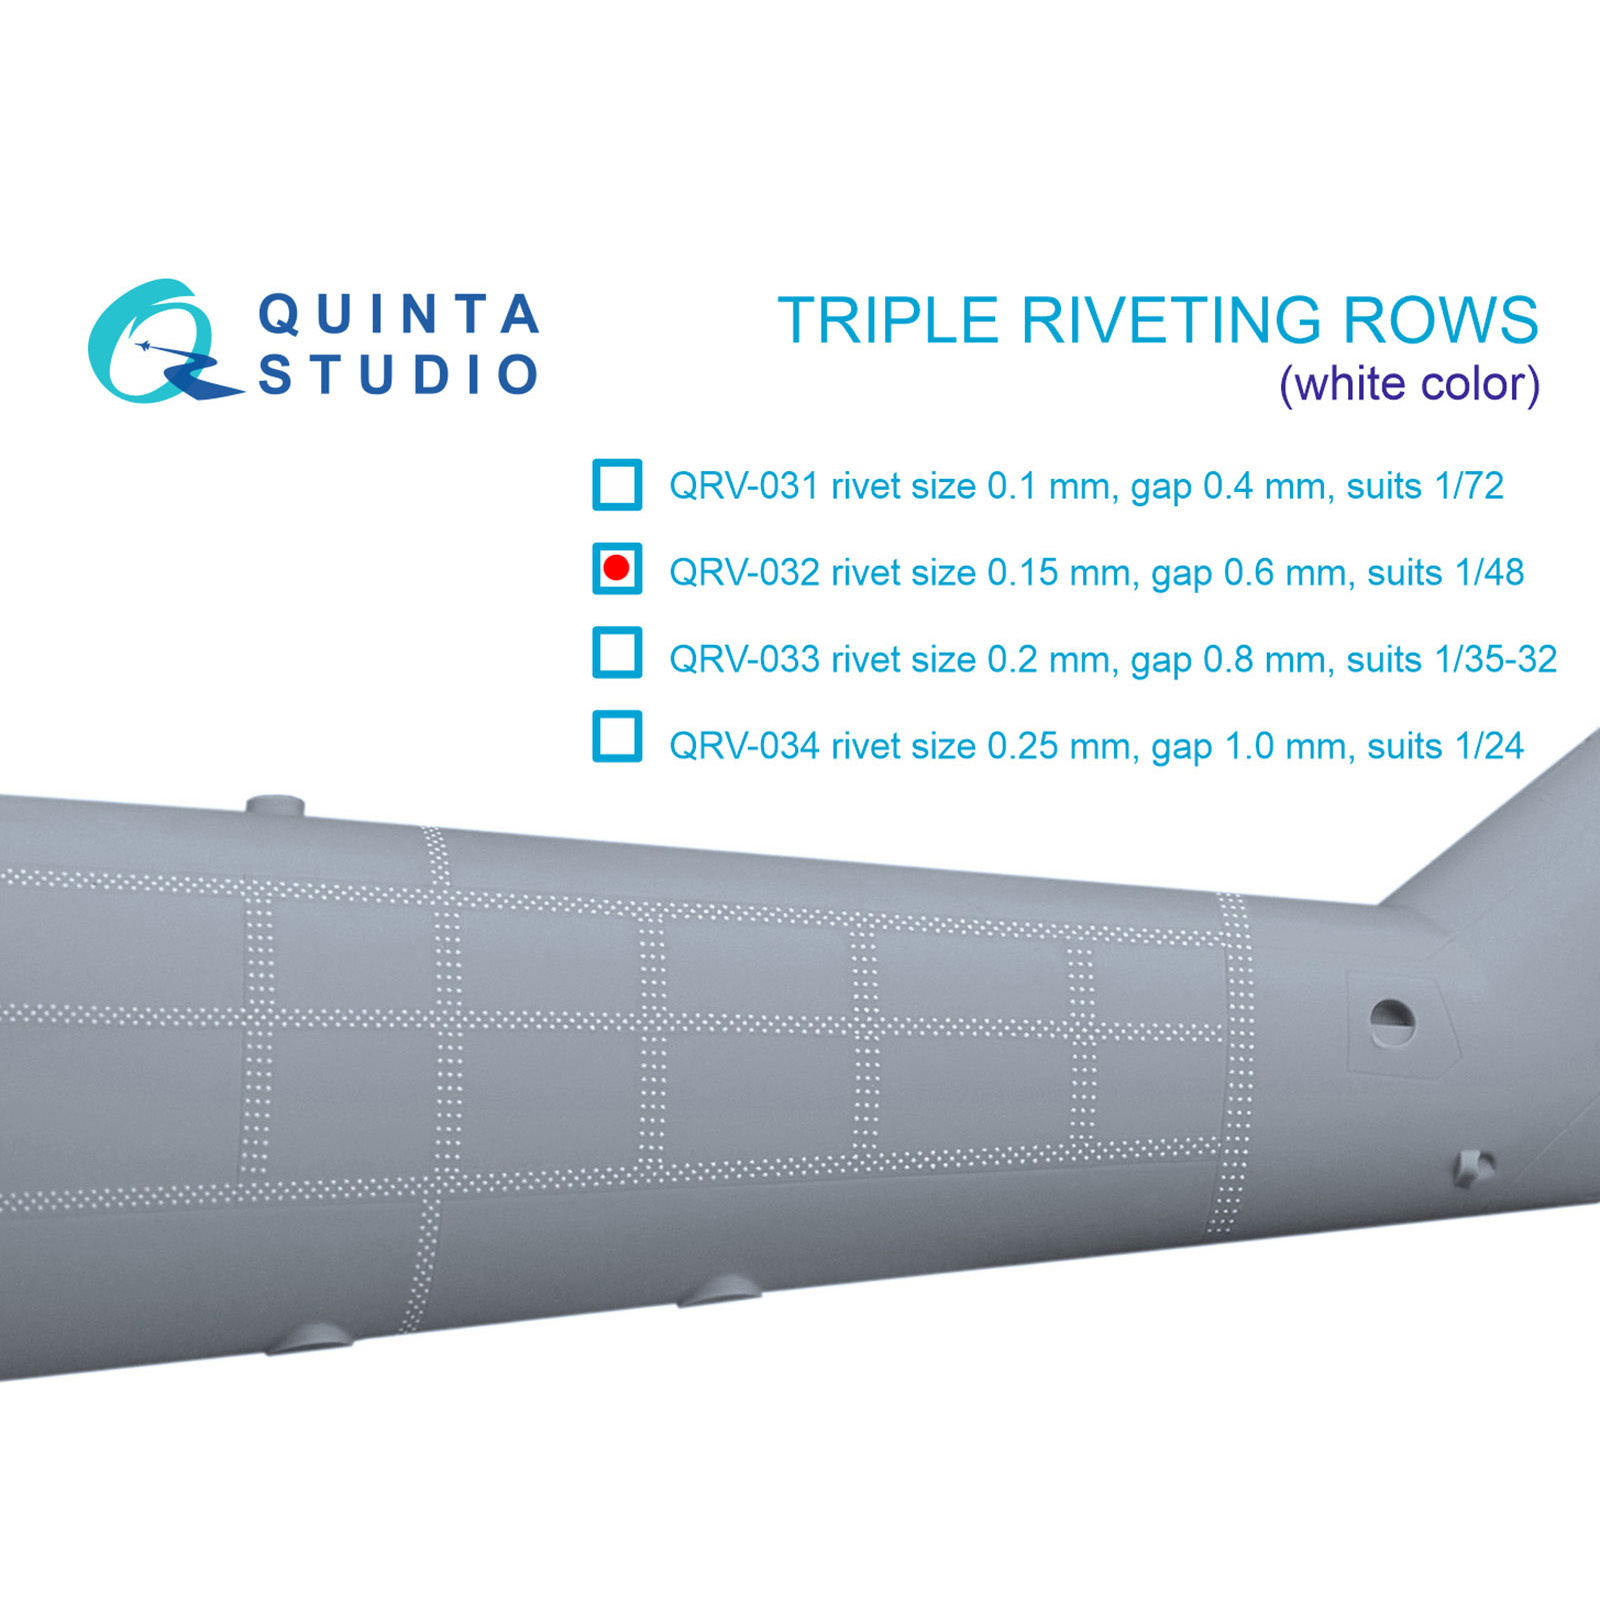 QRV-032 Quinta Studio 1/48 Тройные клепочные ряды (размер клепки 0.15 mm, интервал 0.6 mm), белые, общая длина 4.4 m